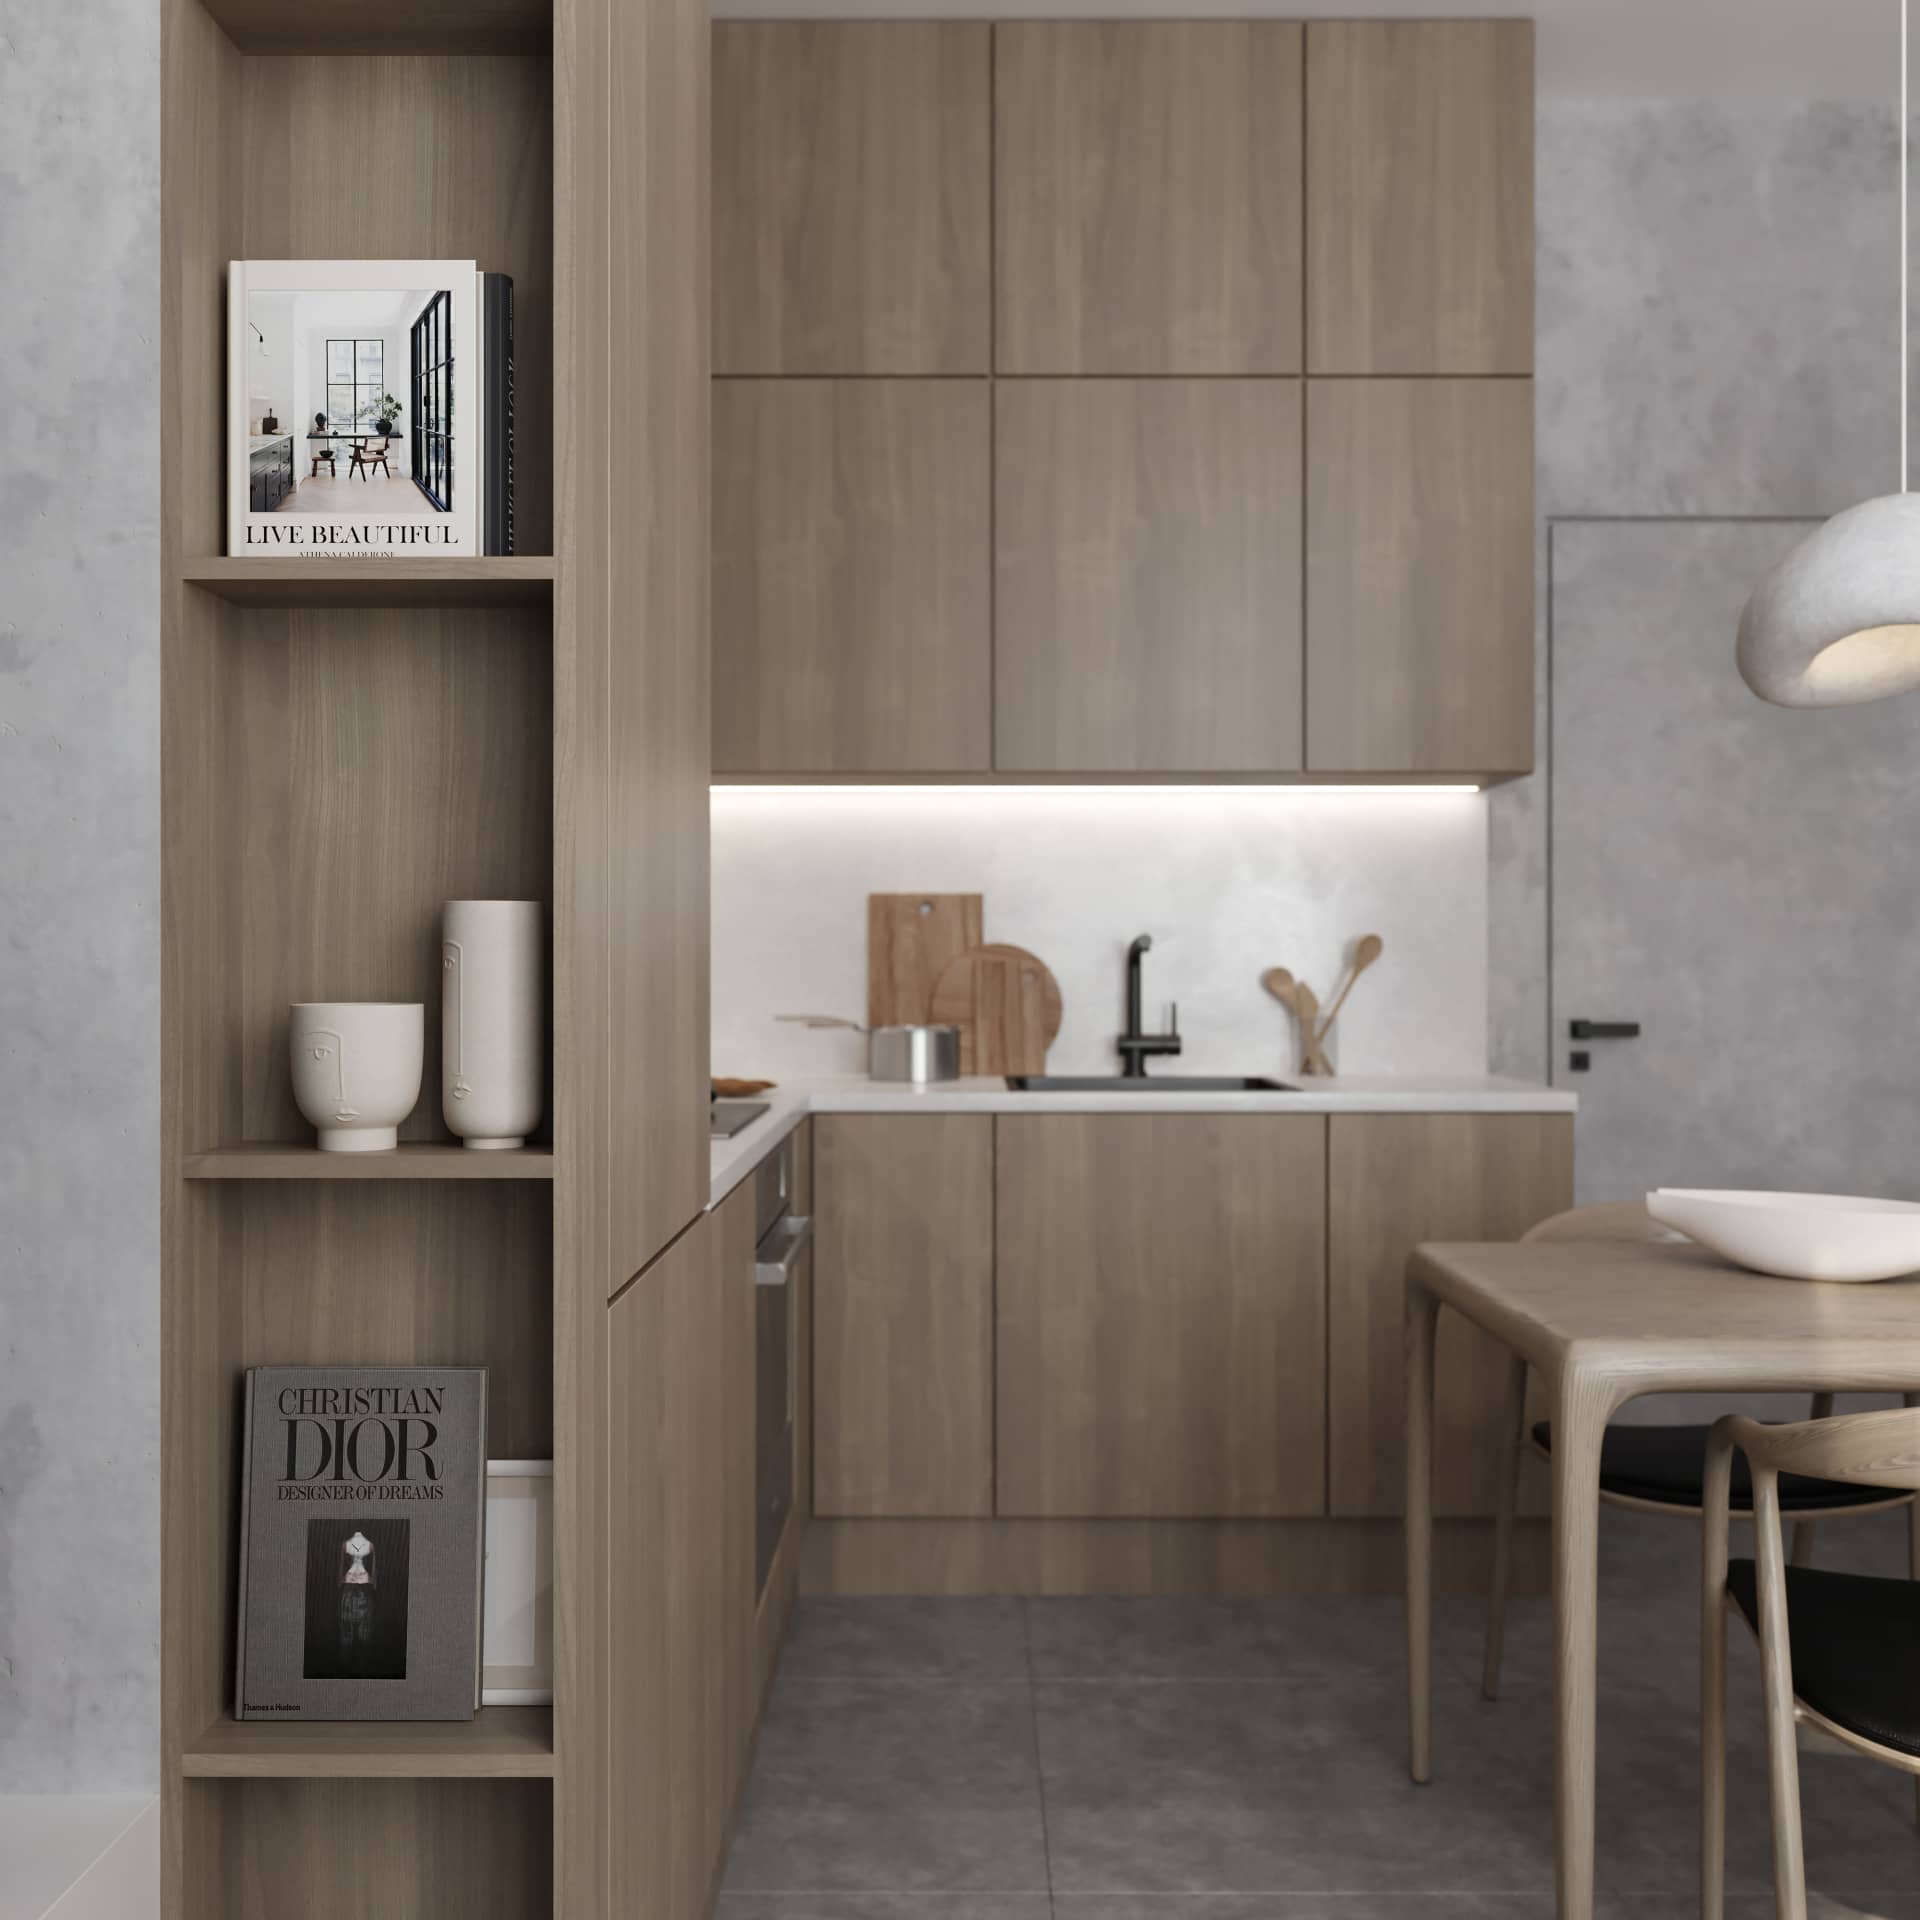 Открытые полки на кухонной мебели делят помещение на две зоны